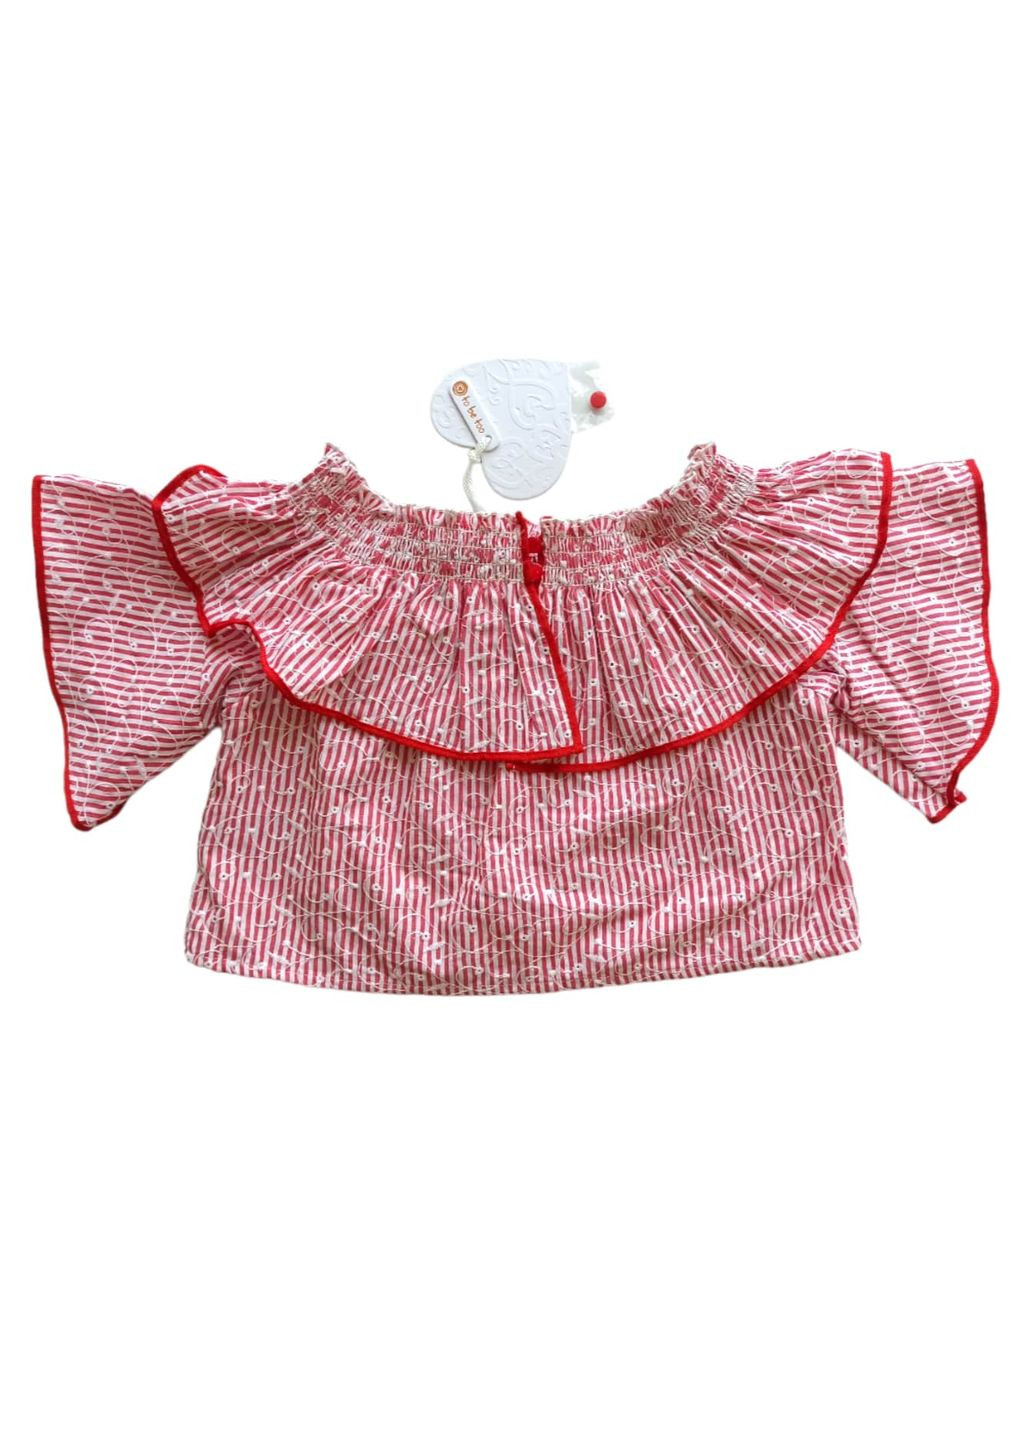 Красная летняя топ-блуза для девушки tf18445 красно-белый хлопок. To Be Too